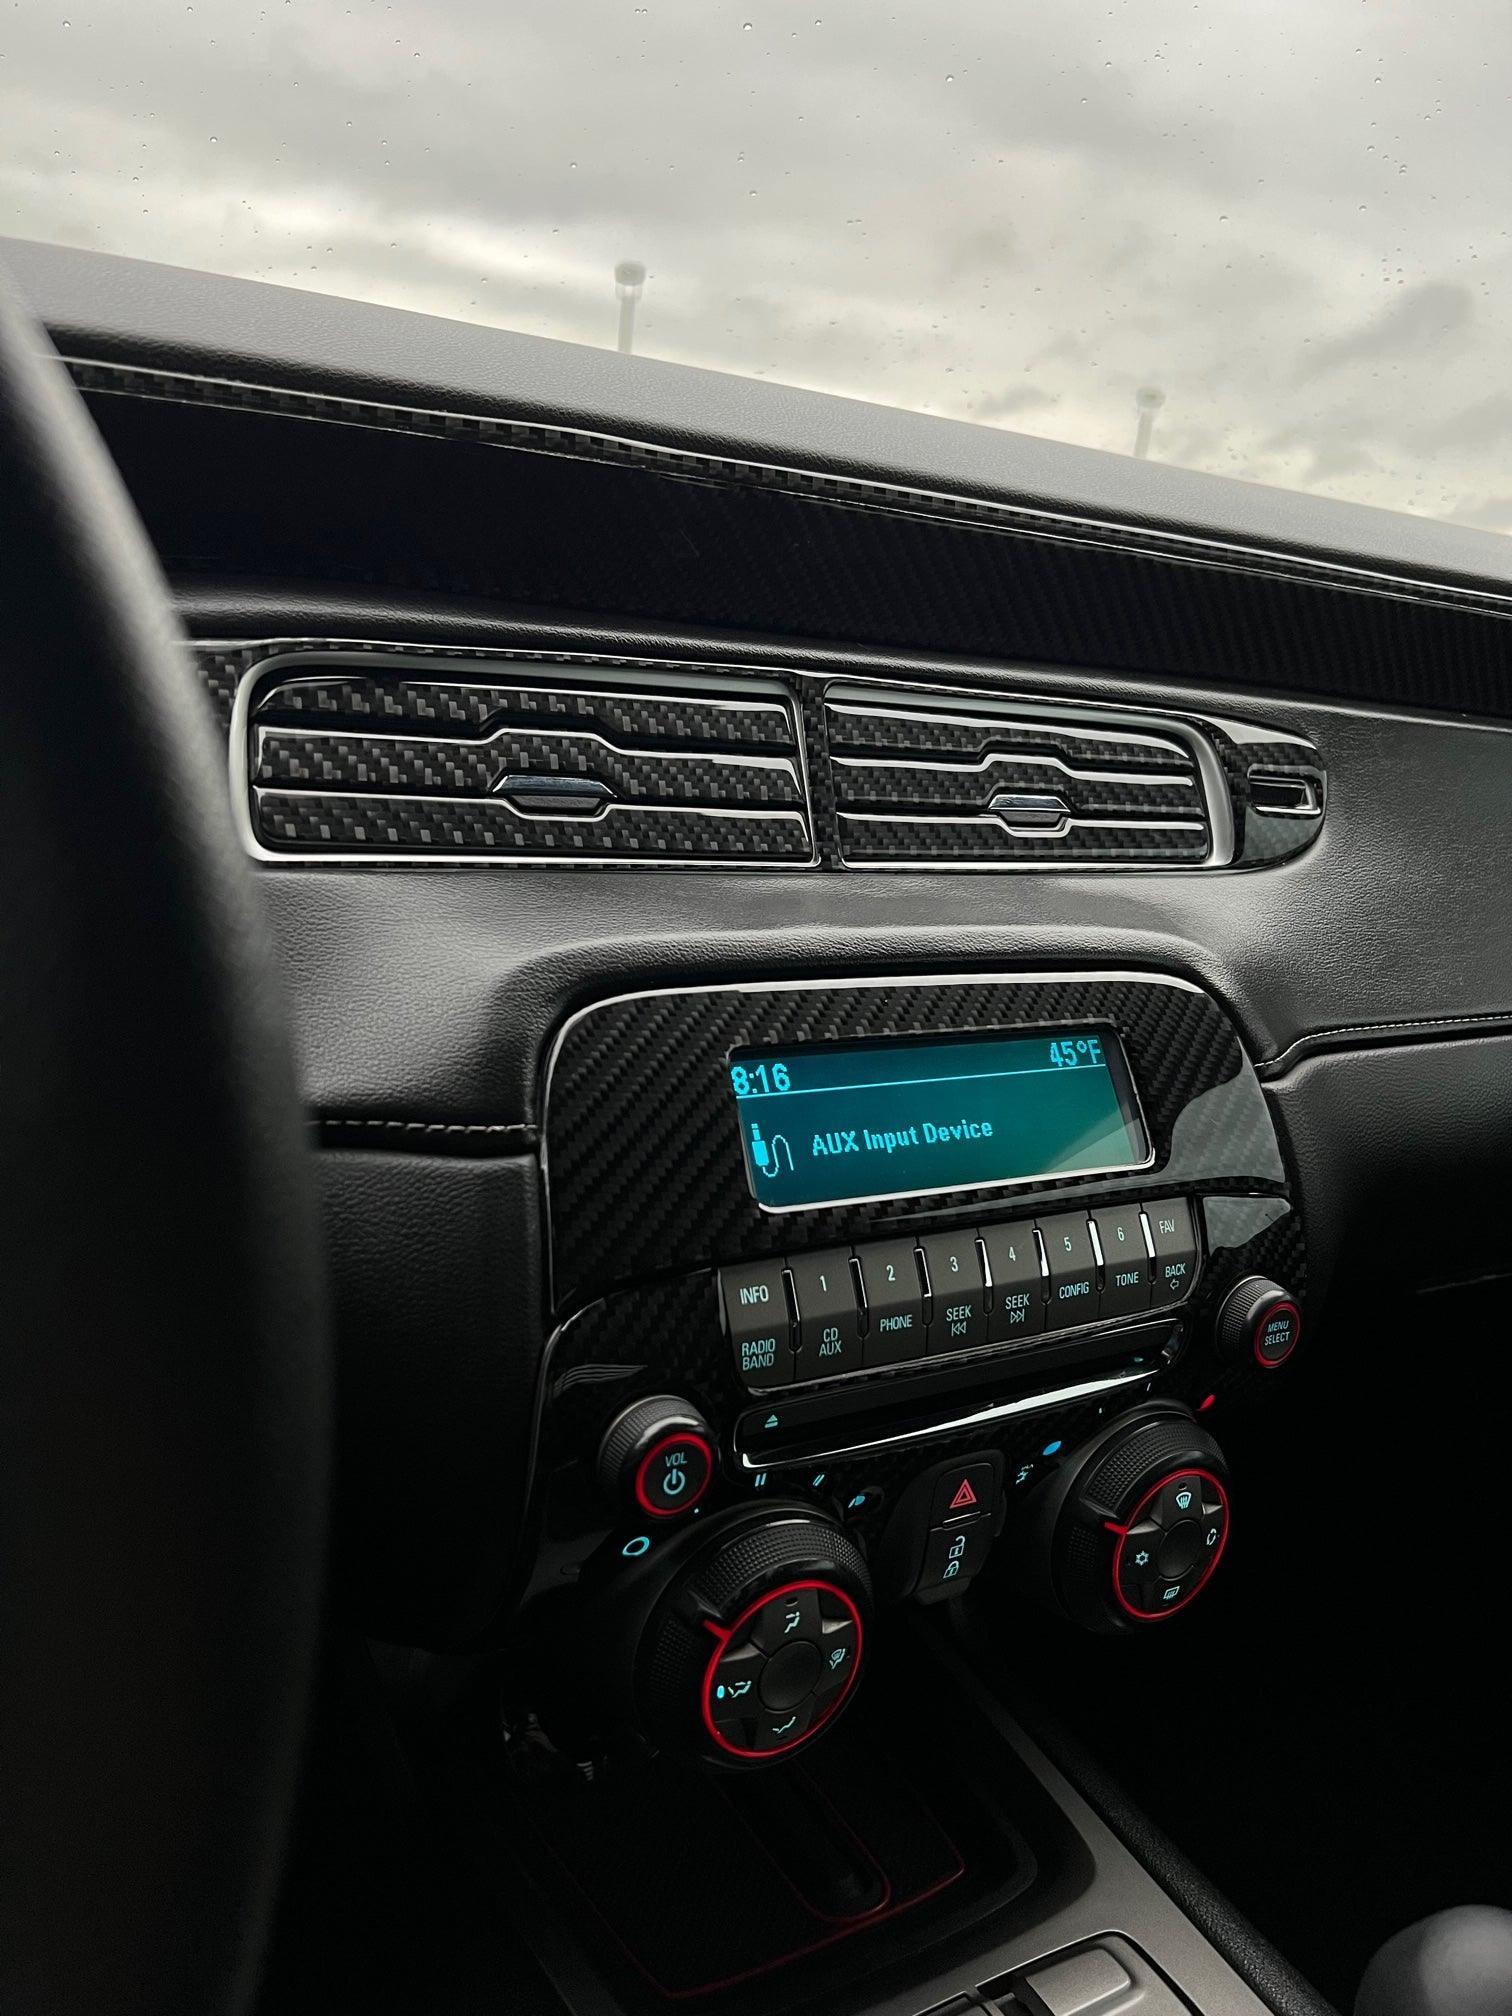 6th gen Camaro Dash Panel Radio Carbon Fiber Trim Cover